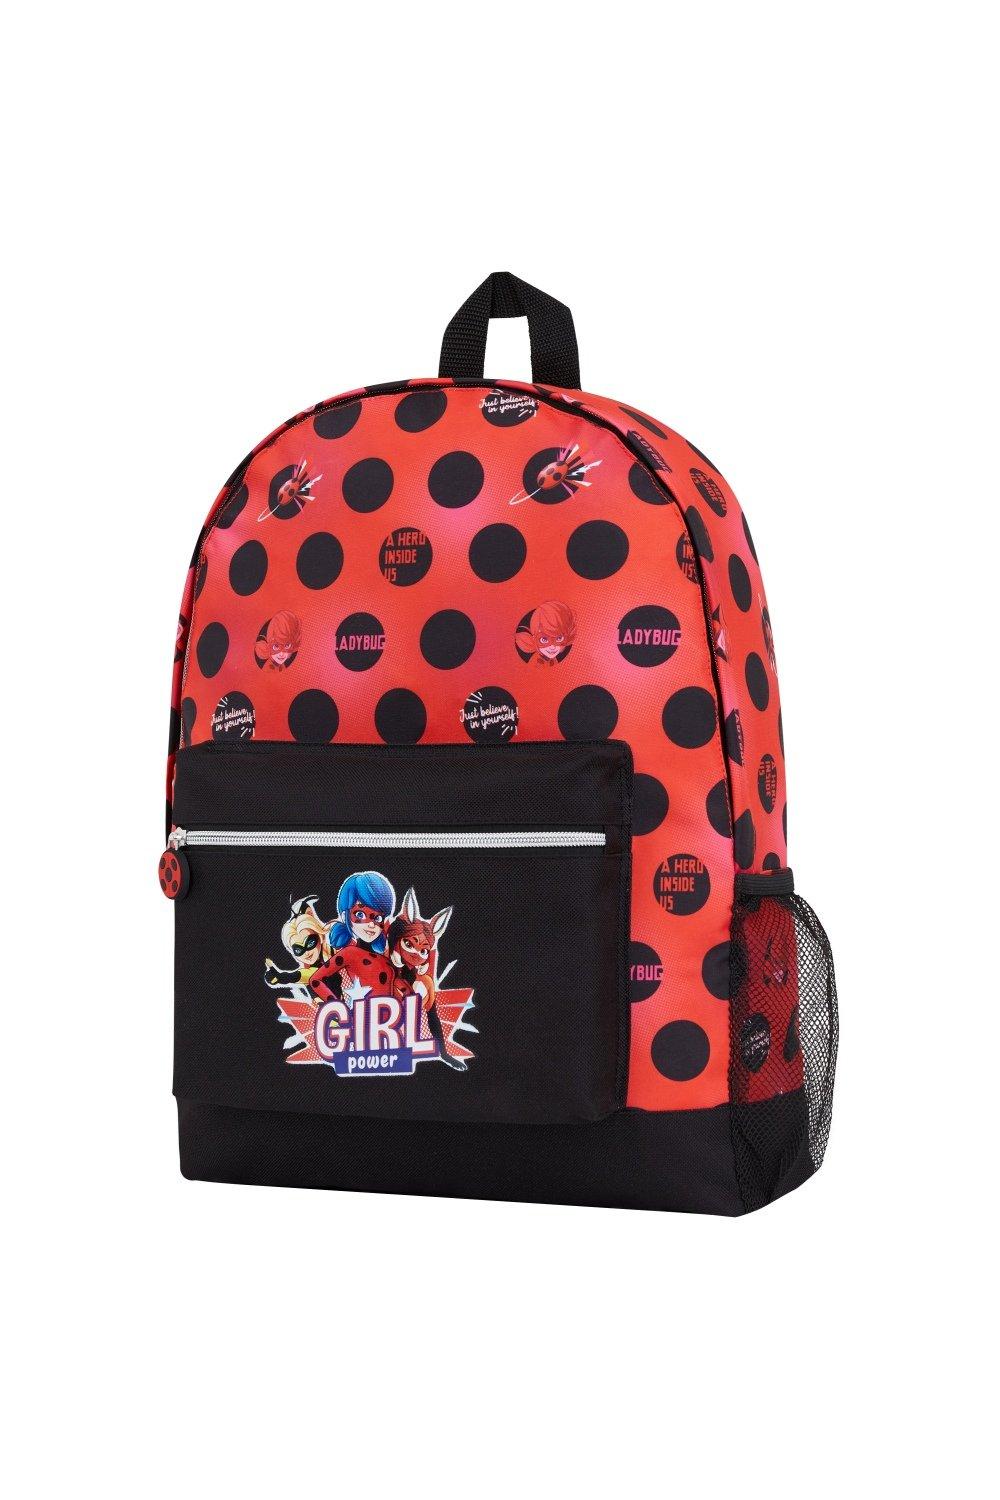 Рюкзак с божьей коровкой Miraculous Ladybug, мультиколор новый детский школьный рюкзак с защитой от потери рюкзак с мультипликационным единорогом для девочек дорожные рюкзаки для детского сада